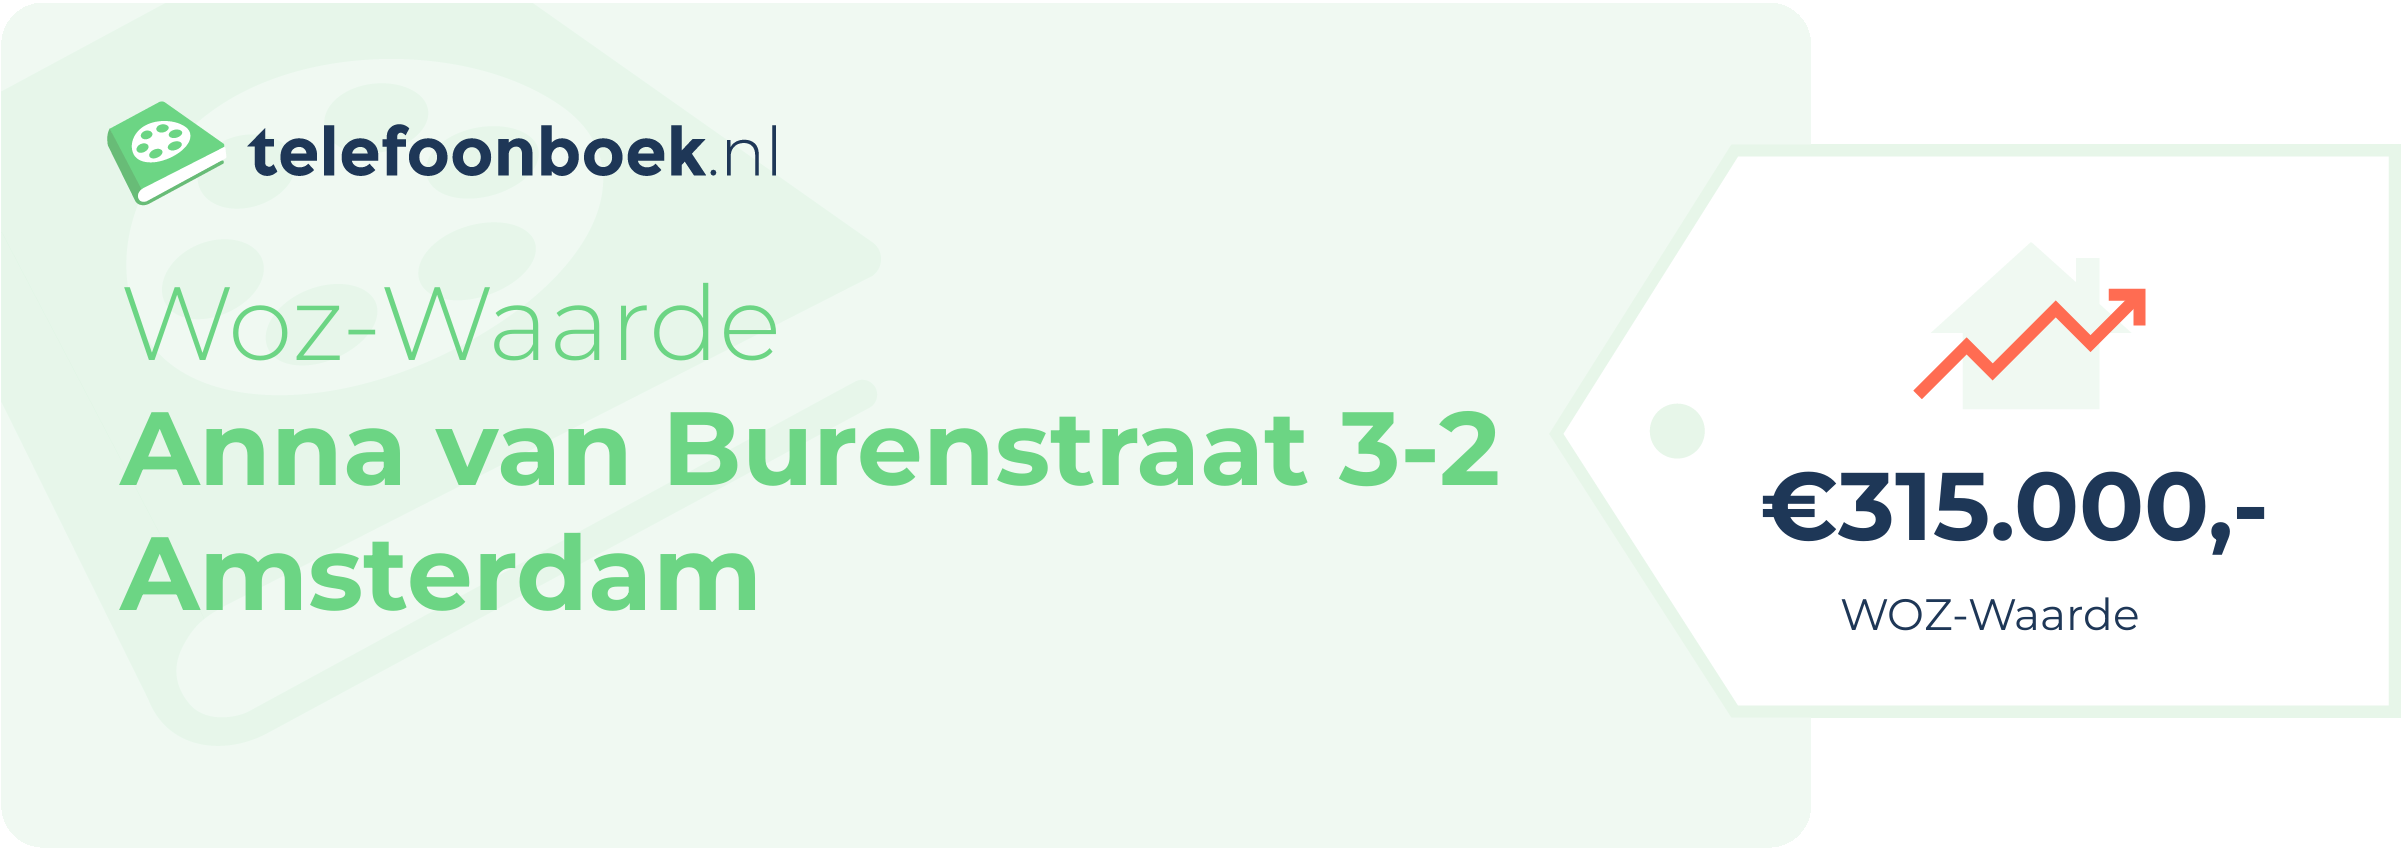 WOZ-waarde Anna Van Burenstraat 3-2 Amsterdam